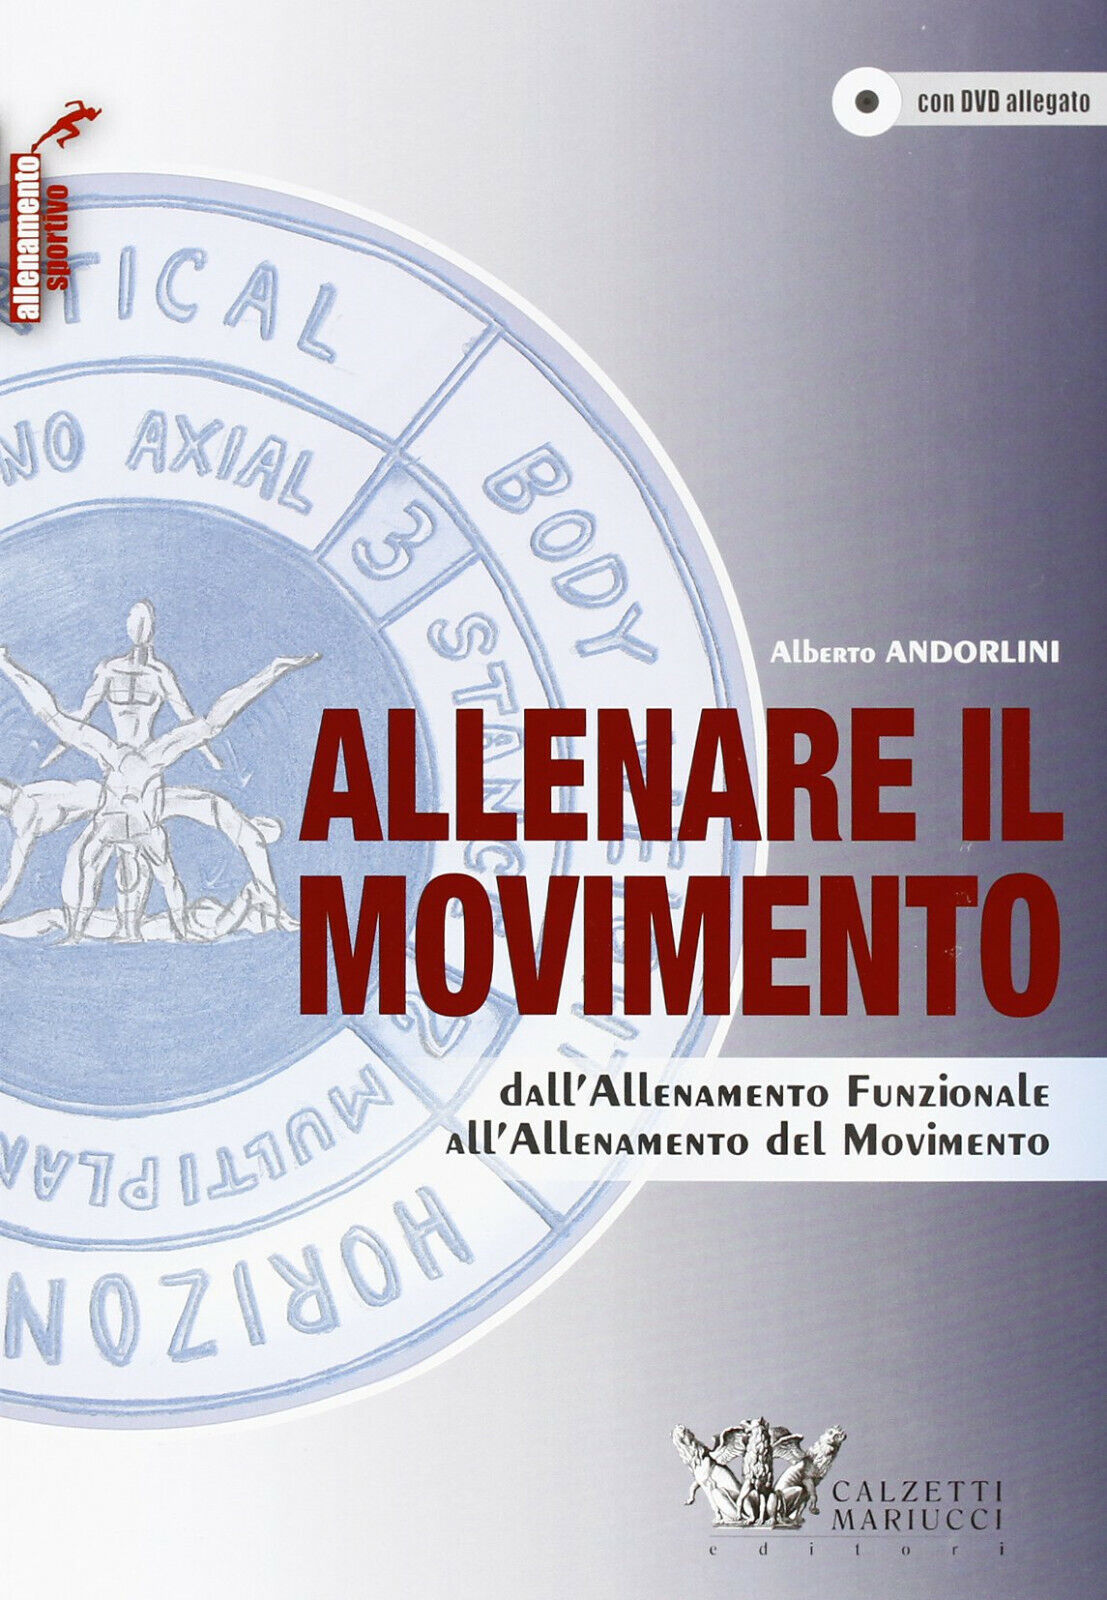 Allenare il movimento con DVD - Alberto Andorlini - Calzetti Mariucci, 2013